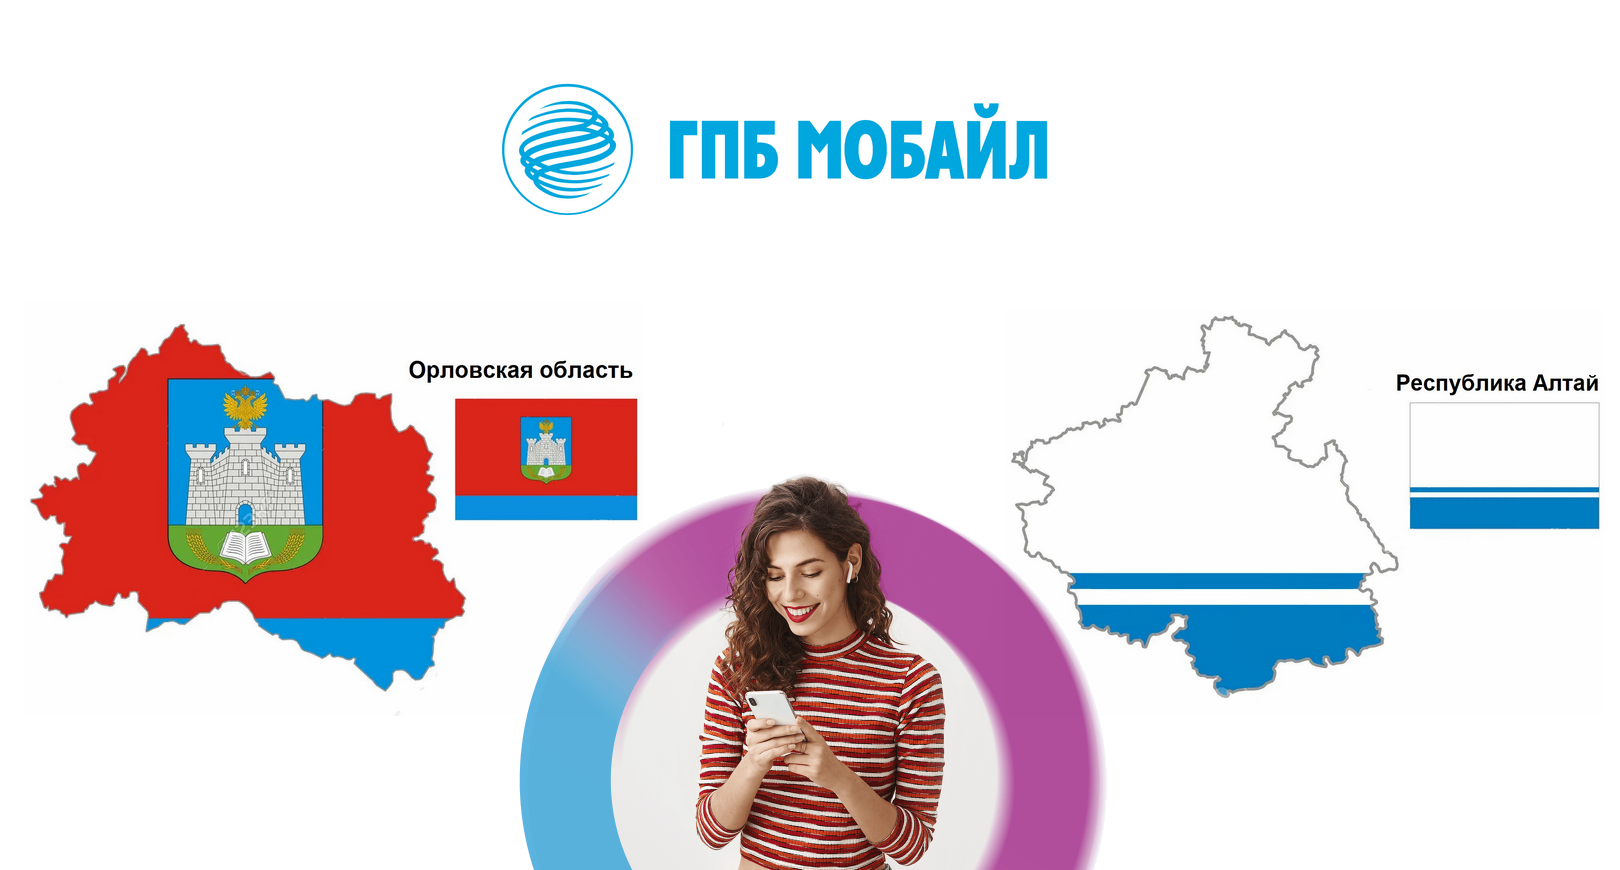 ГПБ Мобайл запустил сеть в Орловской области и Республики Алтай